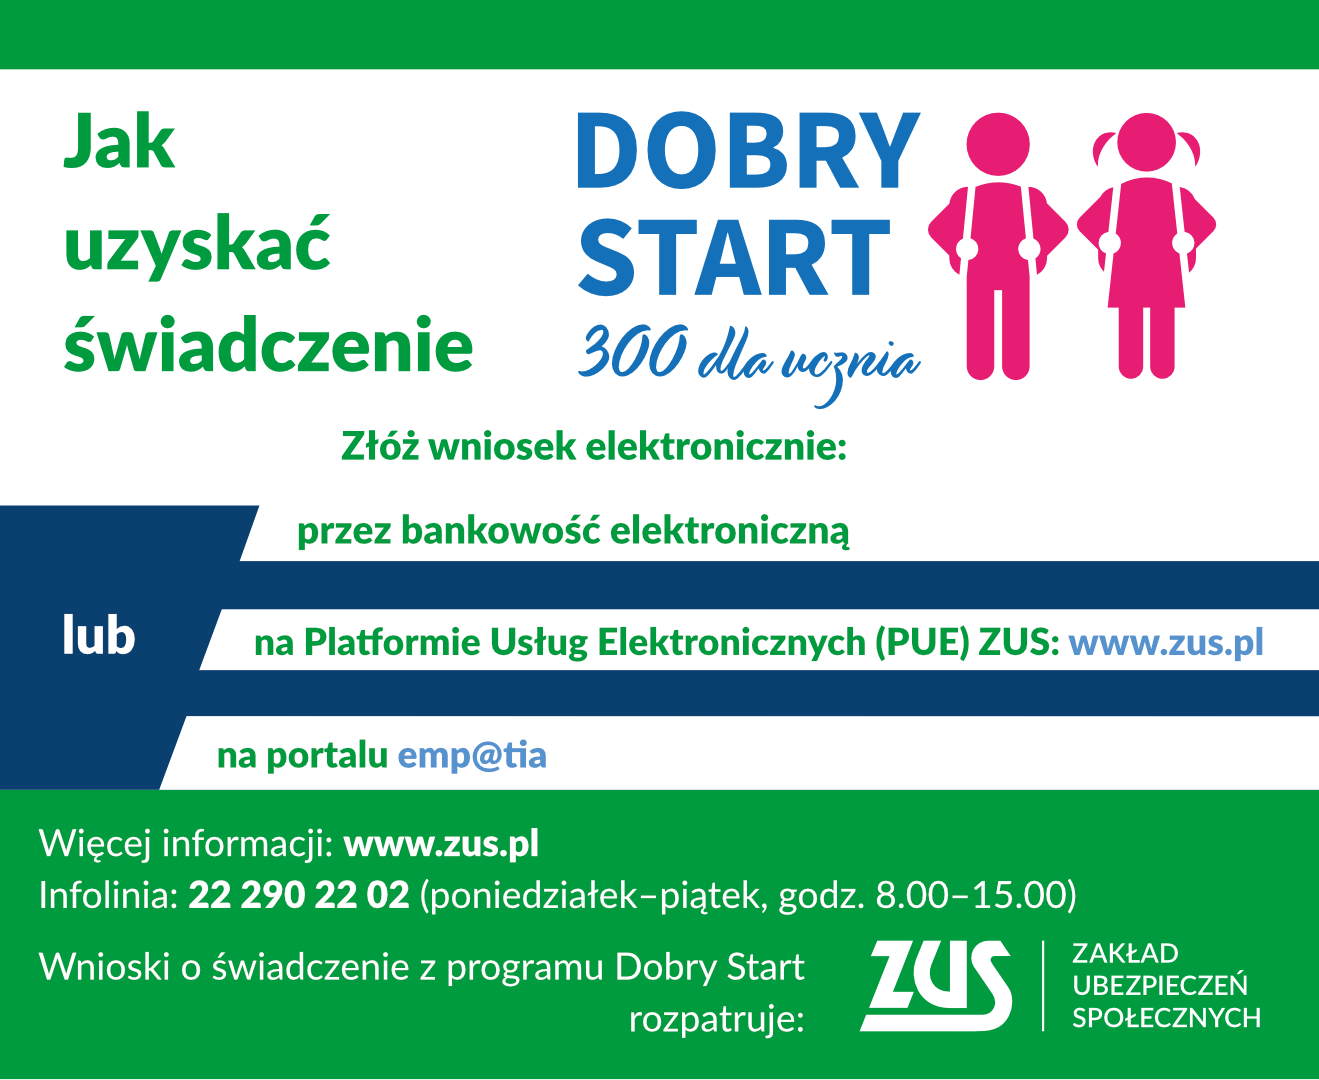 Dobry Start 300 dla ucznia. Więcej informacji www.zus.pl